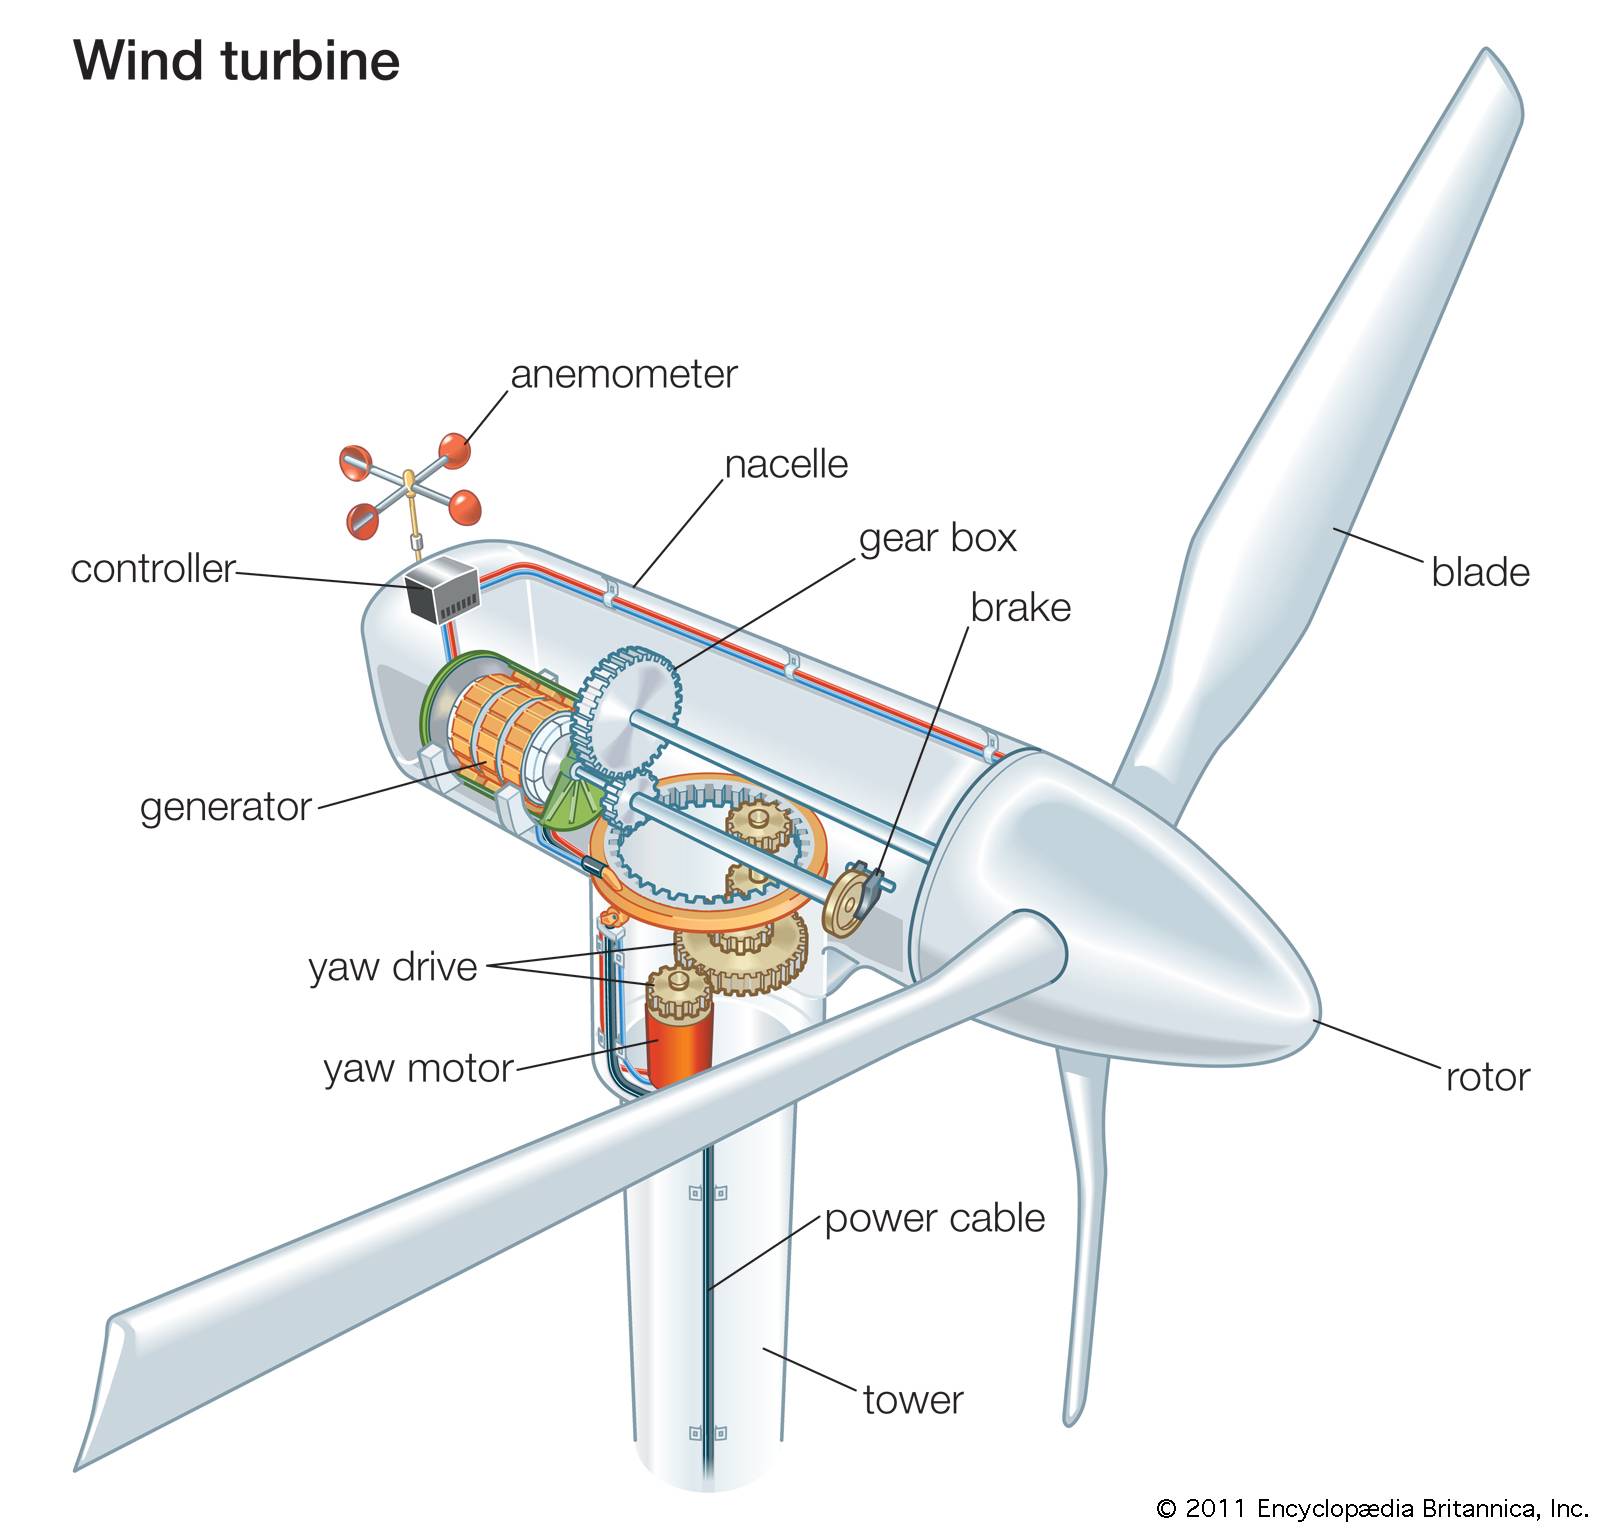 Ветряк для электричества: принцип работы, установка, стоимость